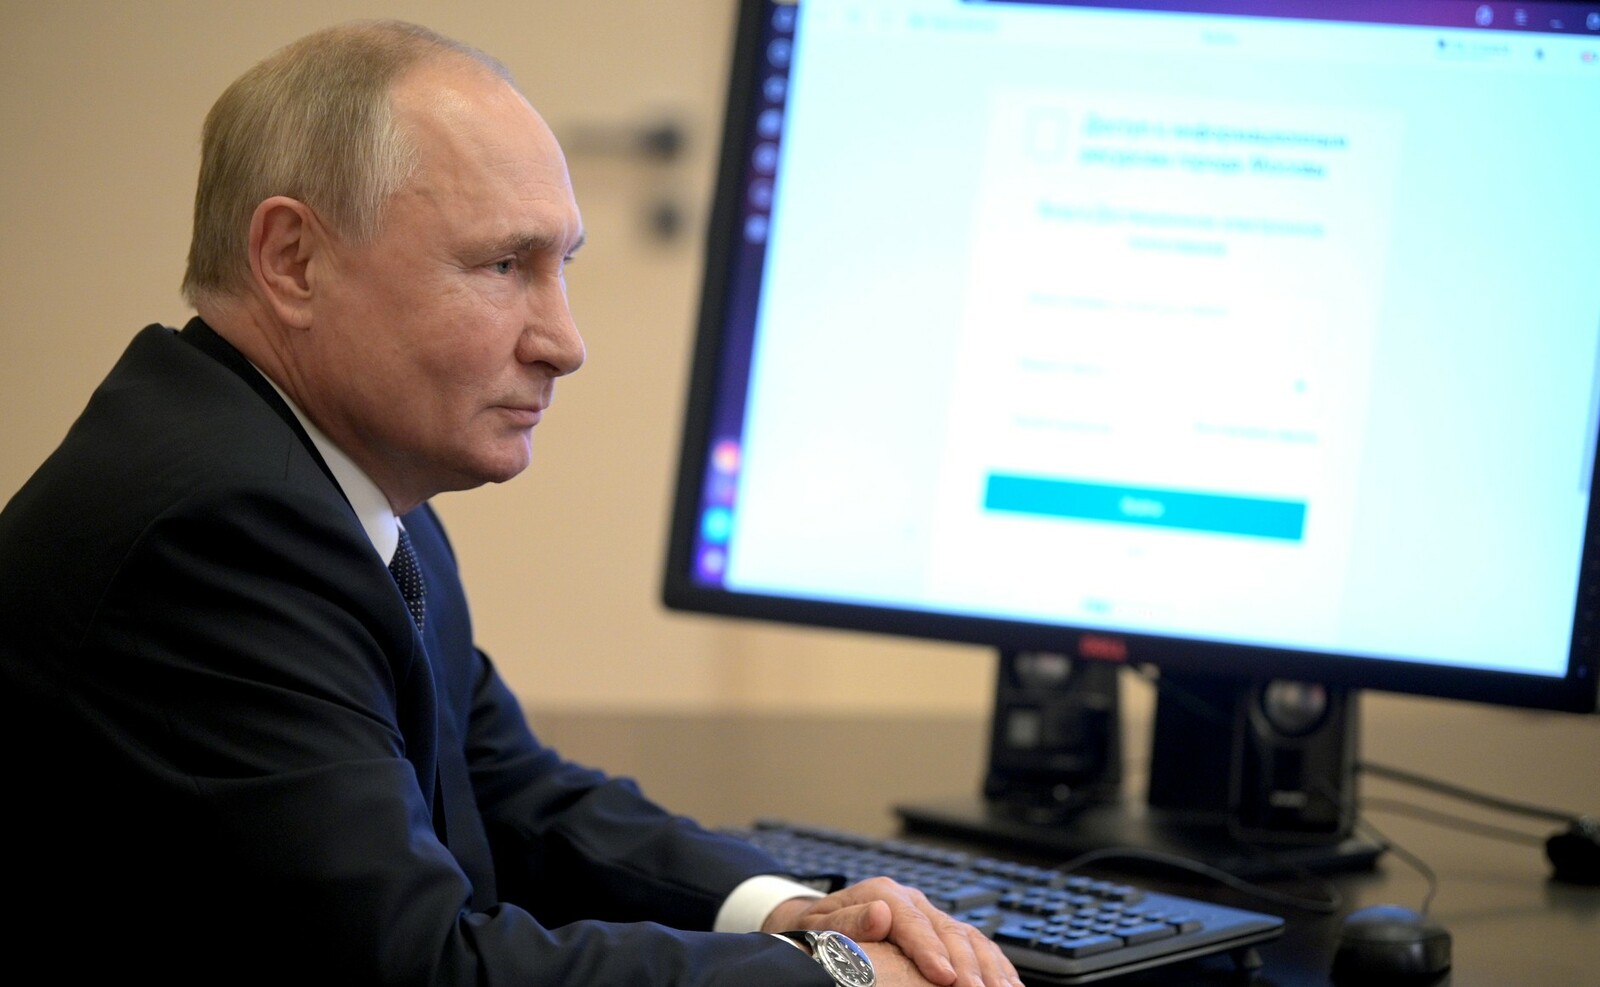 Владимир Путин онлайн амалэн быръёнъёсы пыриськиз